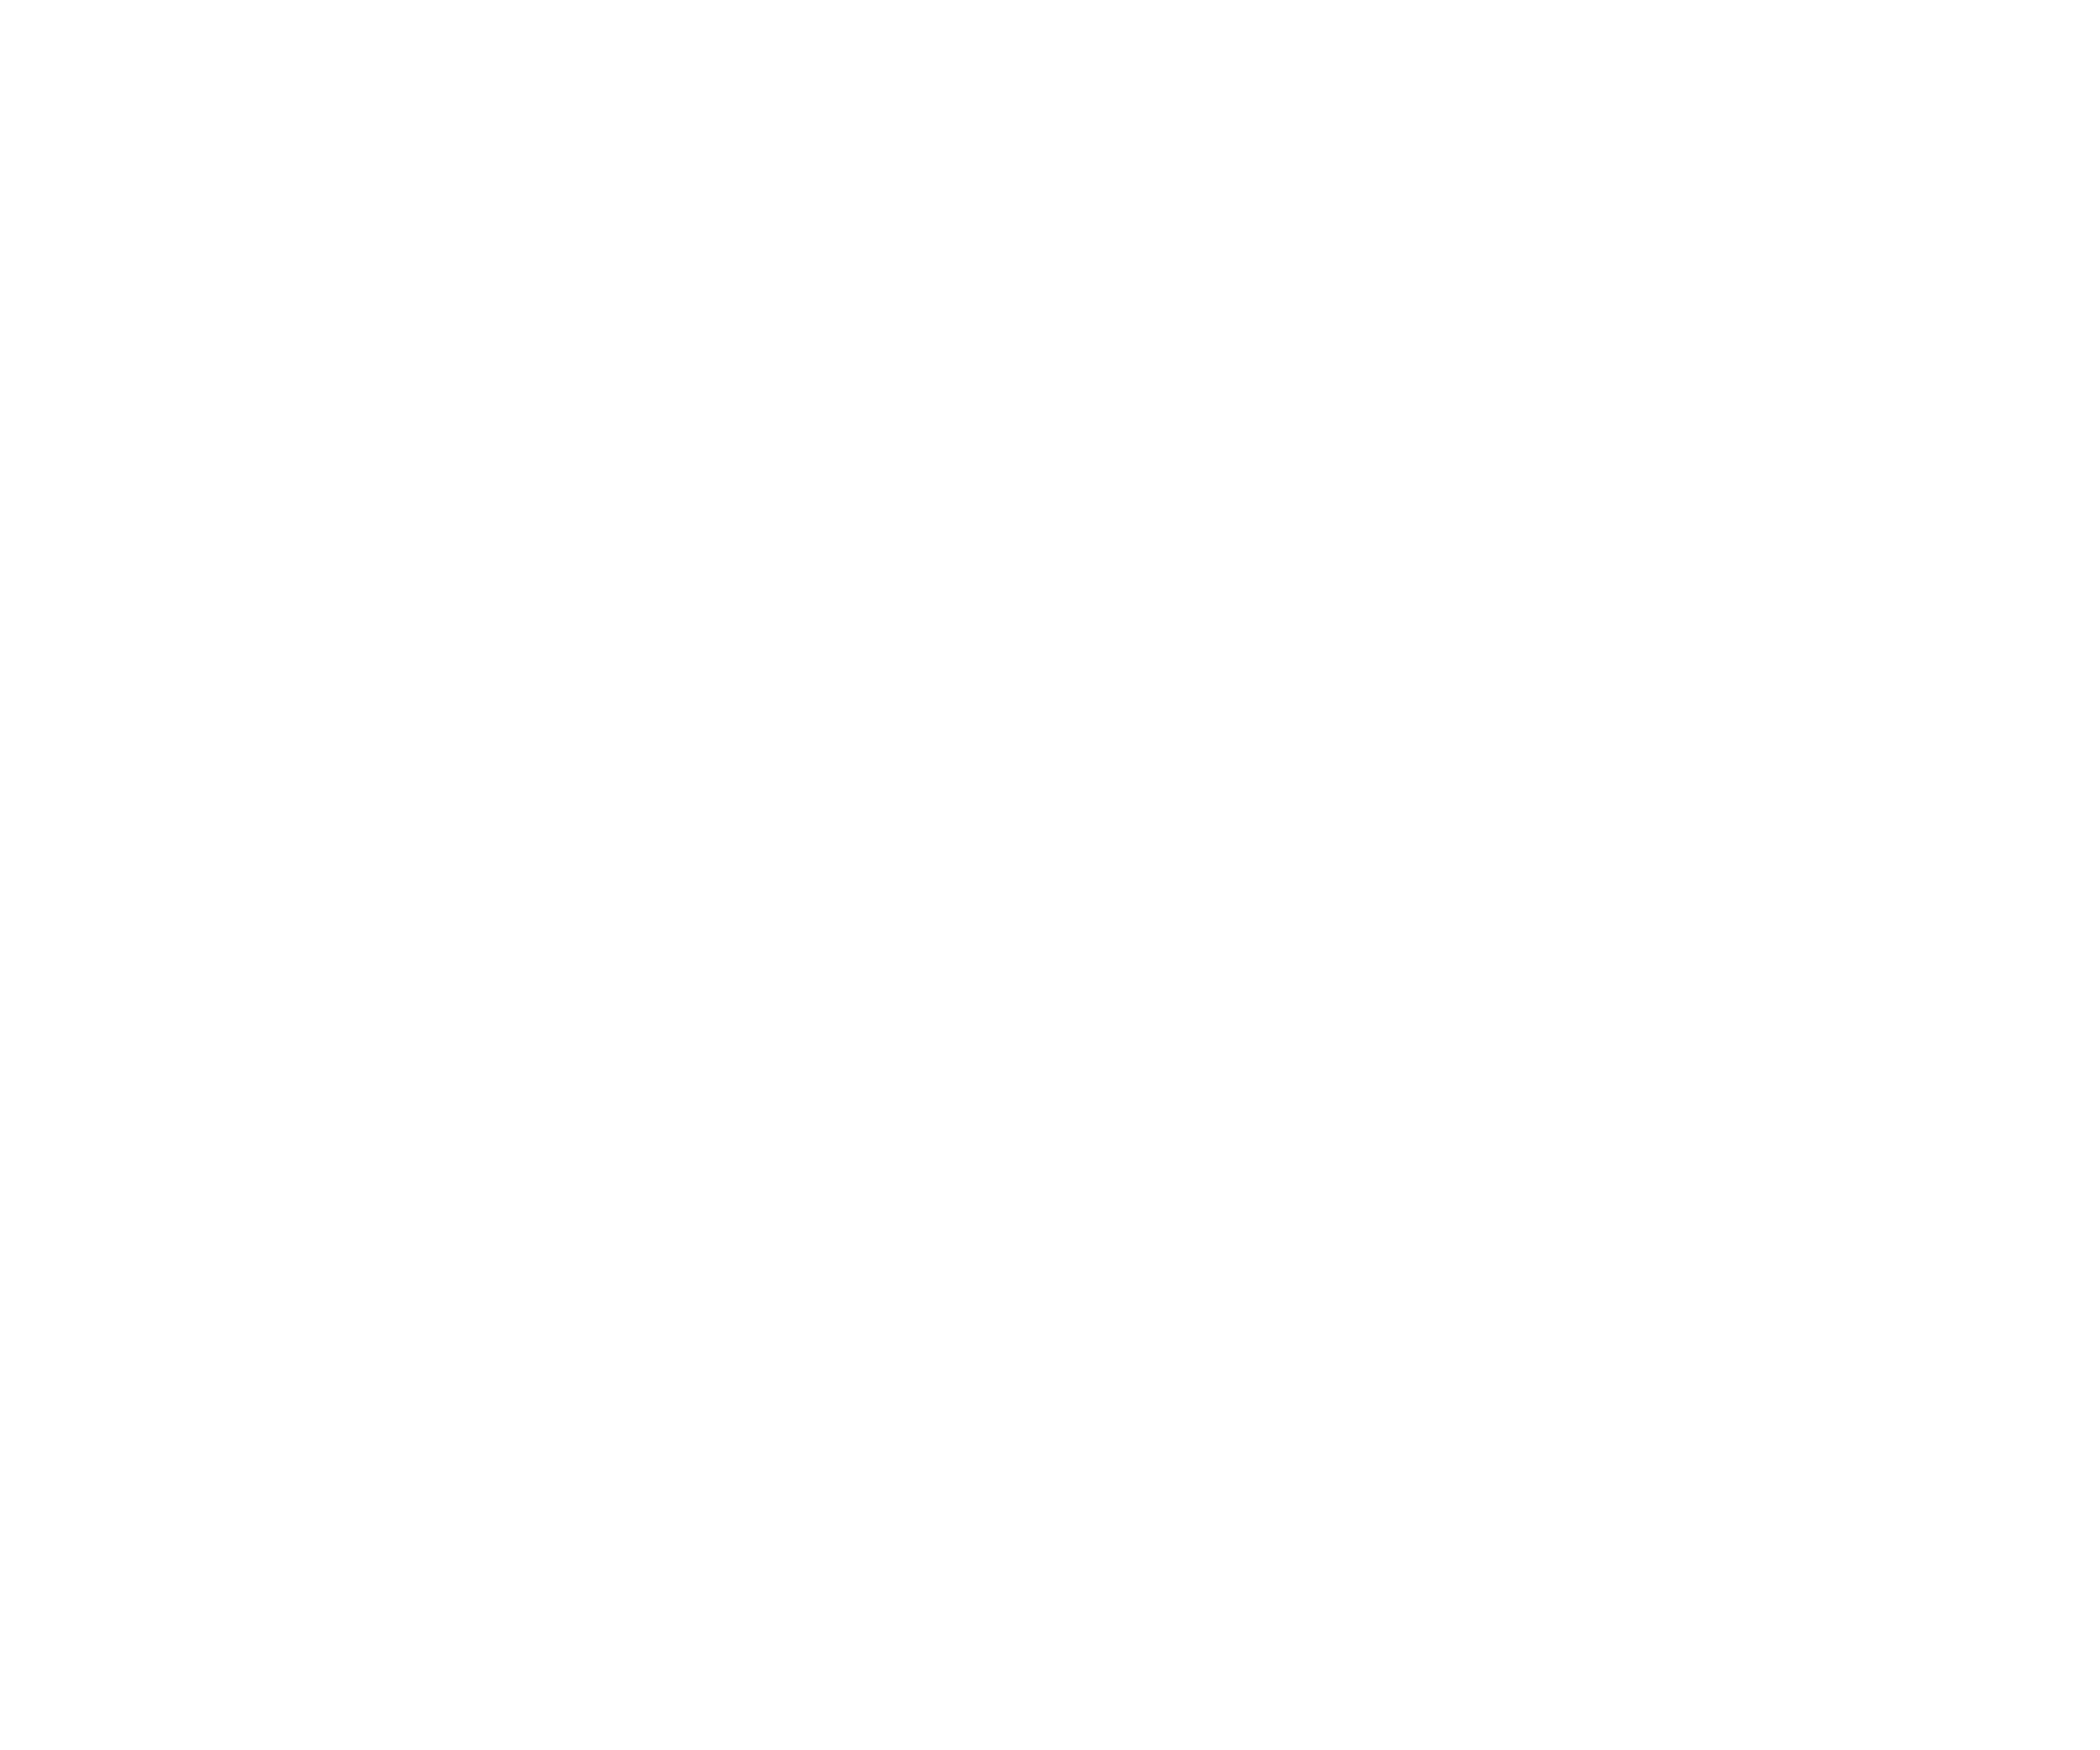 cropped-bureaustela-logo-reverse-rgb.png